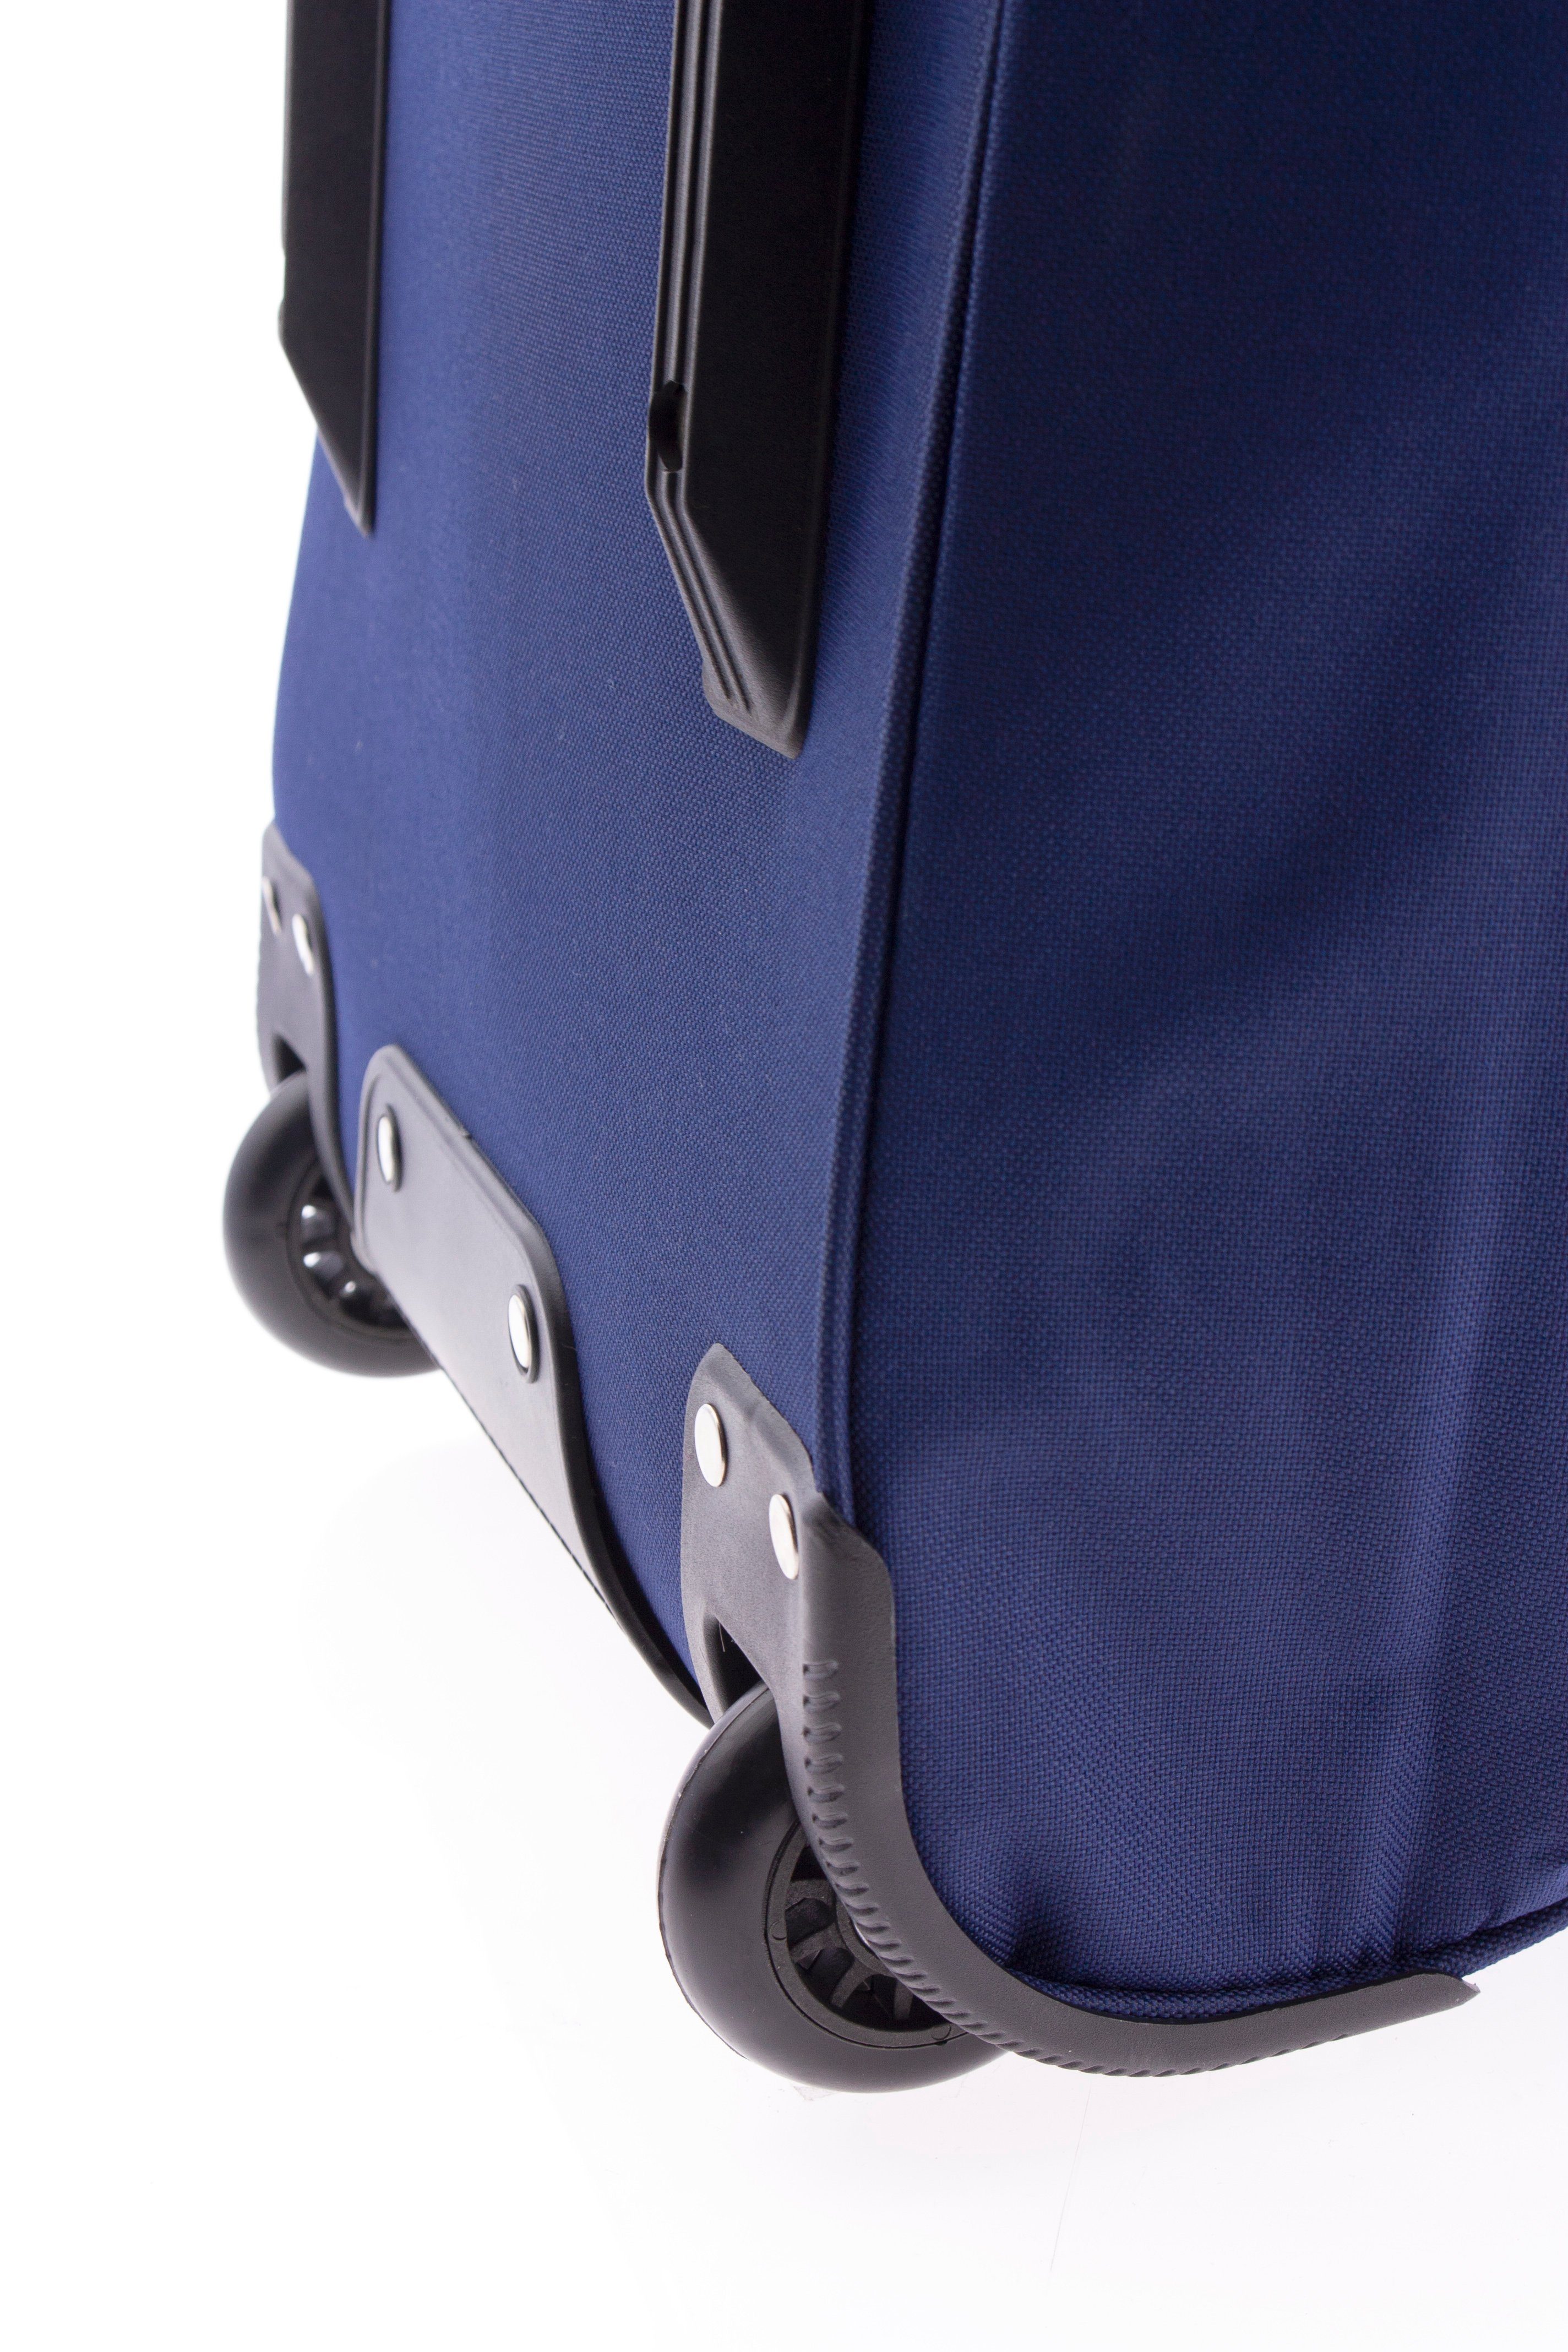 80 - blau mit Liter Gewicht: cm - kg, Trolleytasche, - 2,8 GLADIATOR Rollen Sporttasche JUMBO Reisetasche - Rollentasche, 104 - Trolley-Reisetasche